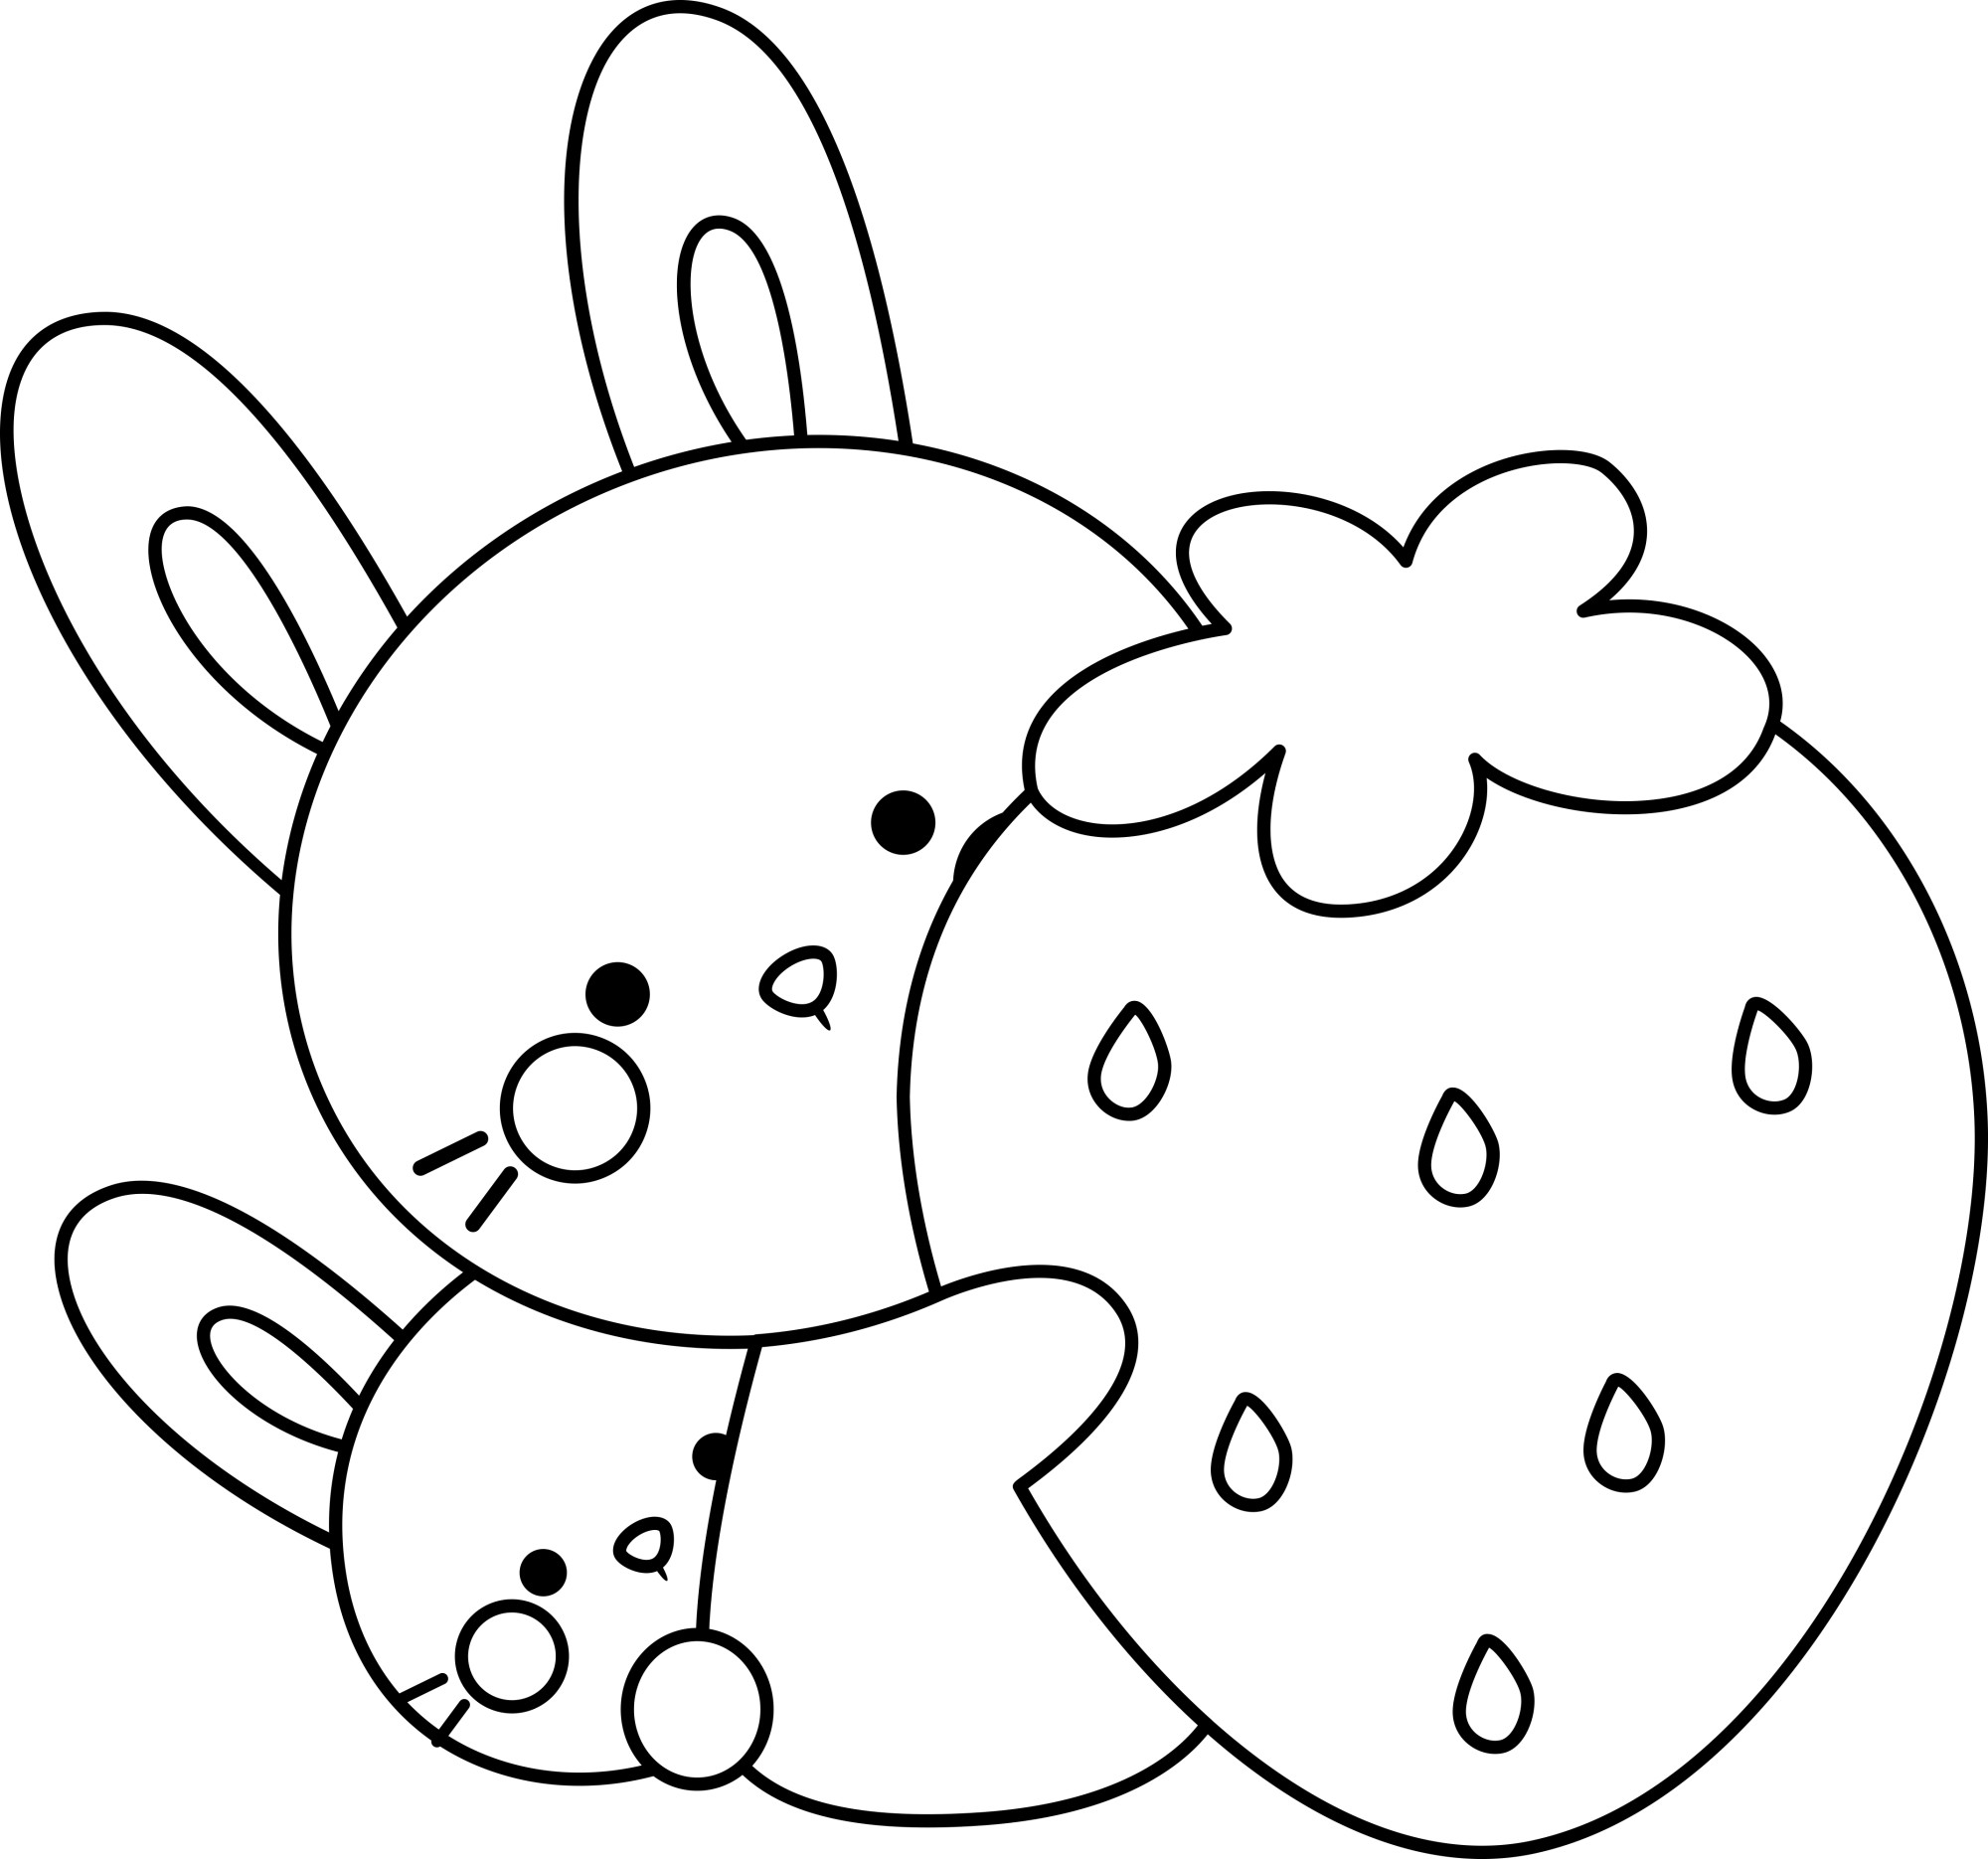 Раскраска для детей: зайчики с клубничкой